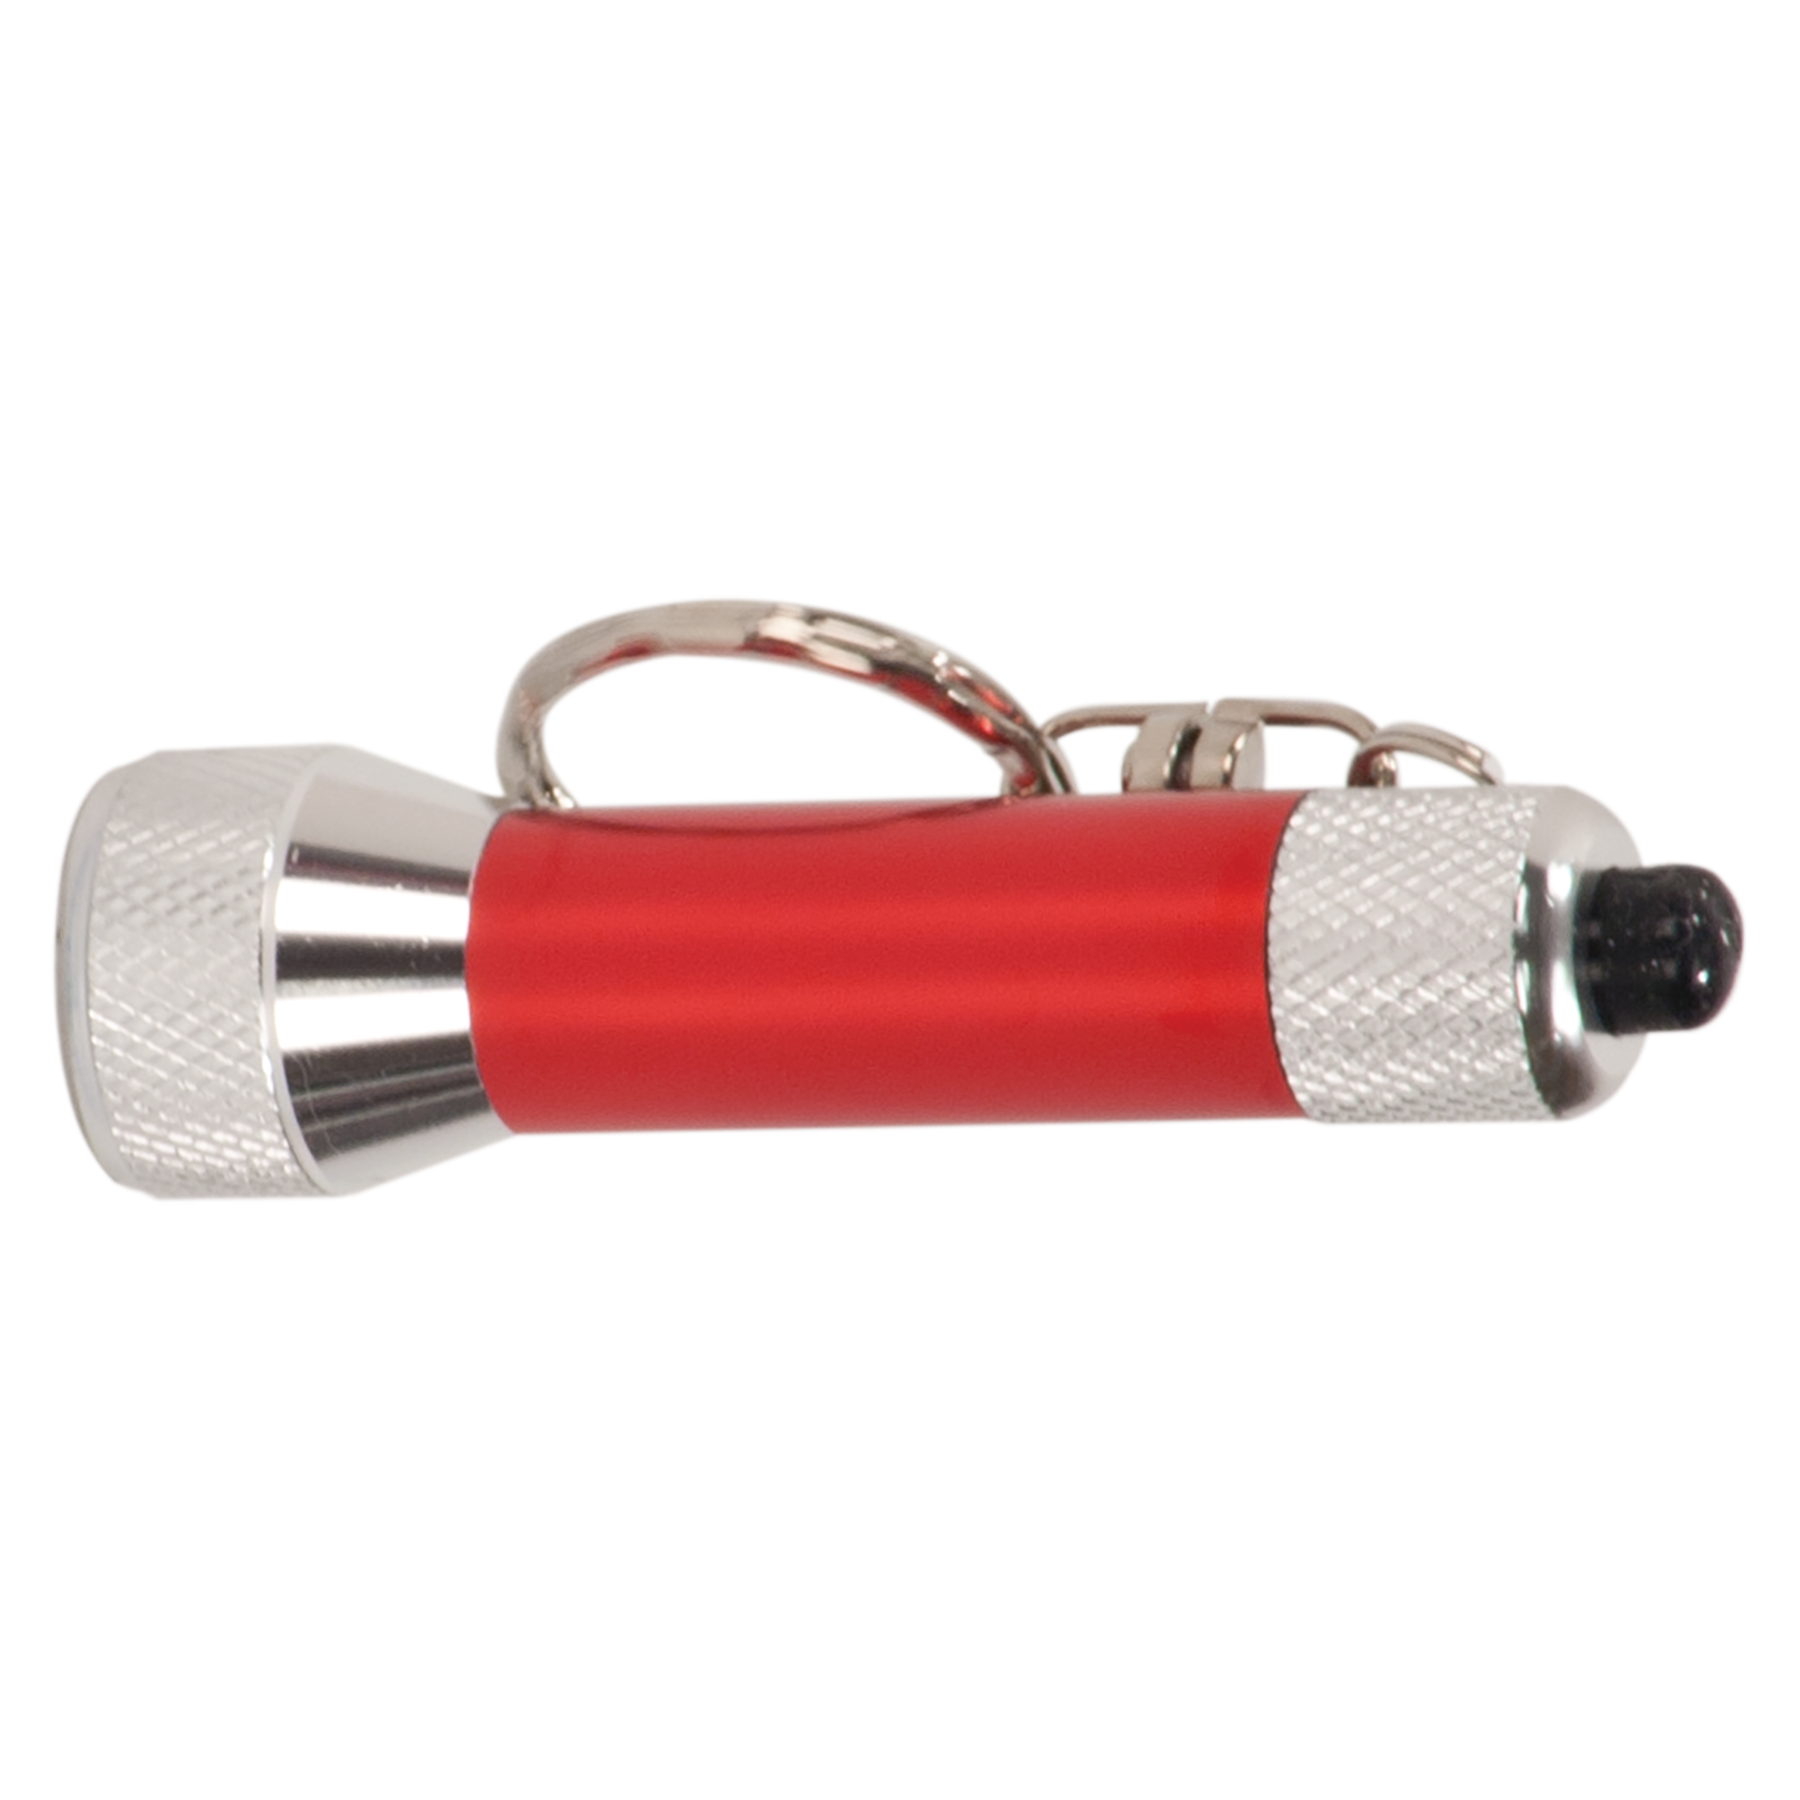 2 3/4" 5-LED Laserable Flashlight with Keychain